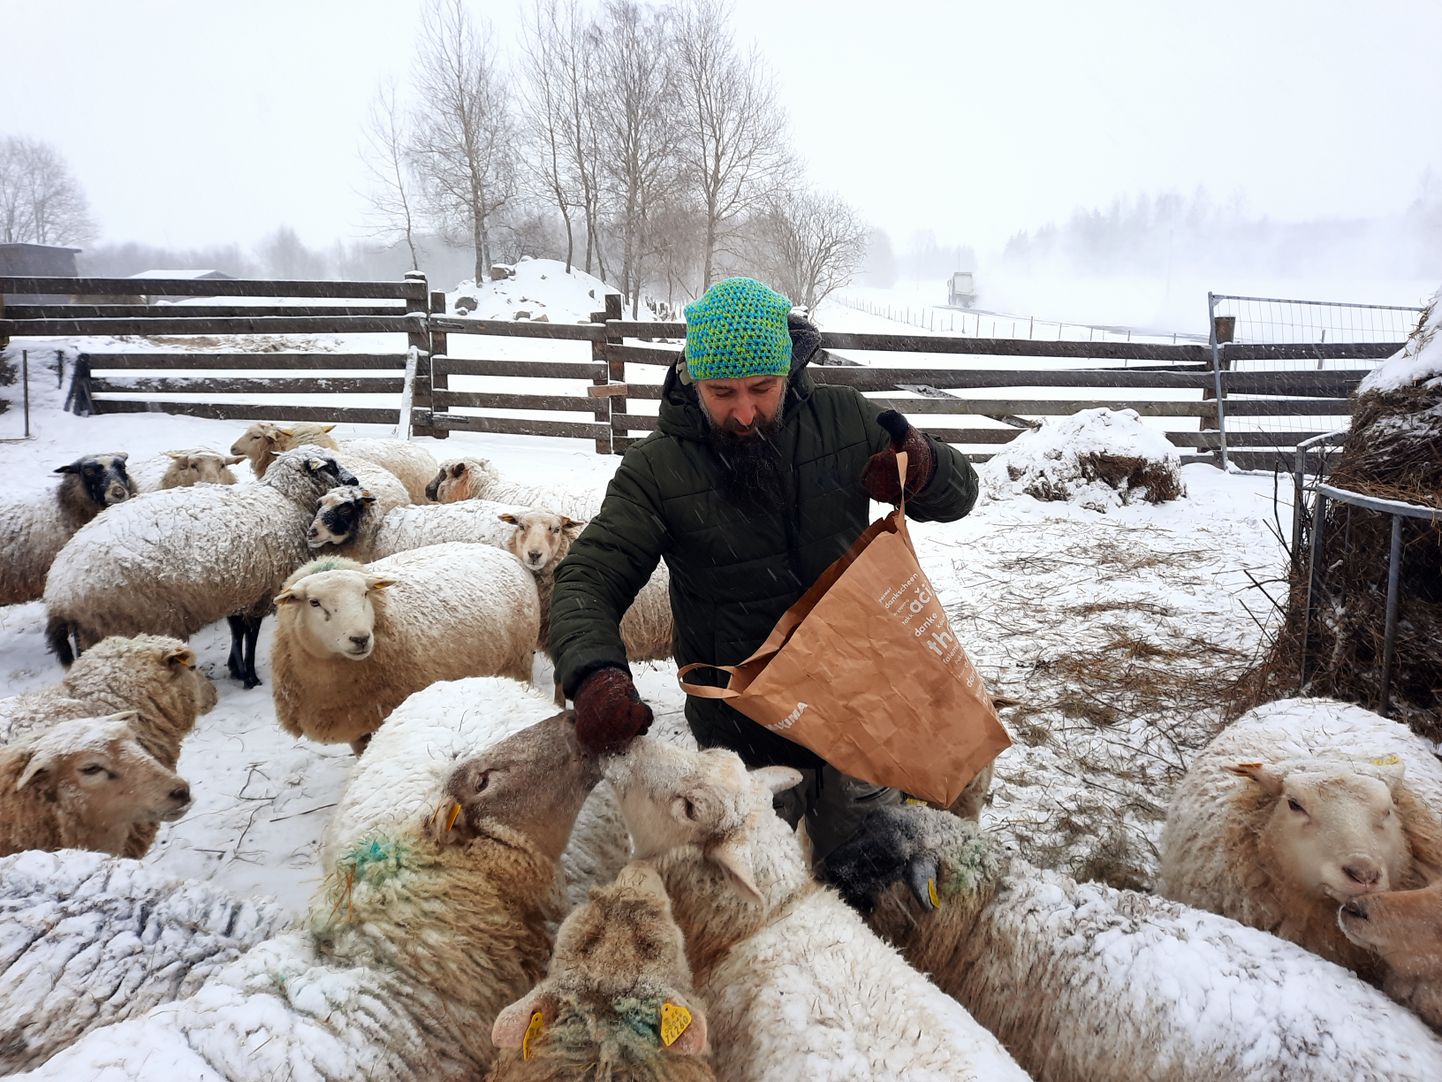 Savi talu peremees annab rahva toodud ja oma funktsiooni täitnud jõulukuused harjumuspäraselt lammastele hekseldamiseks. Fotol kostitab ta neljajalgseid kuivanud leivaga. 